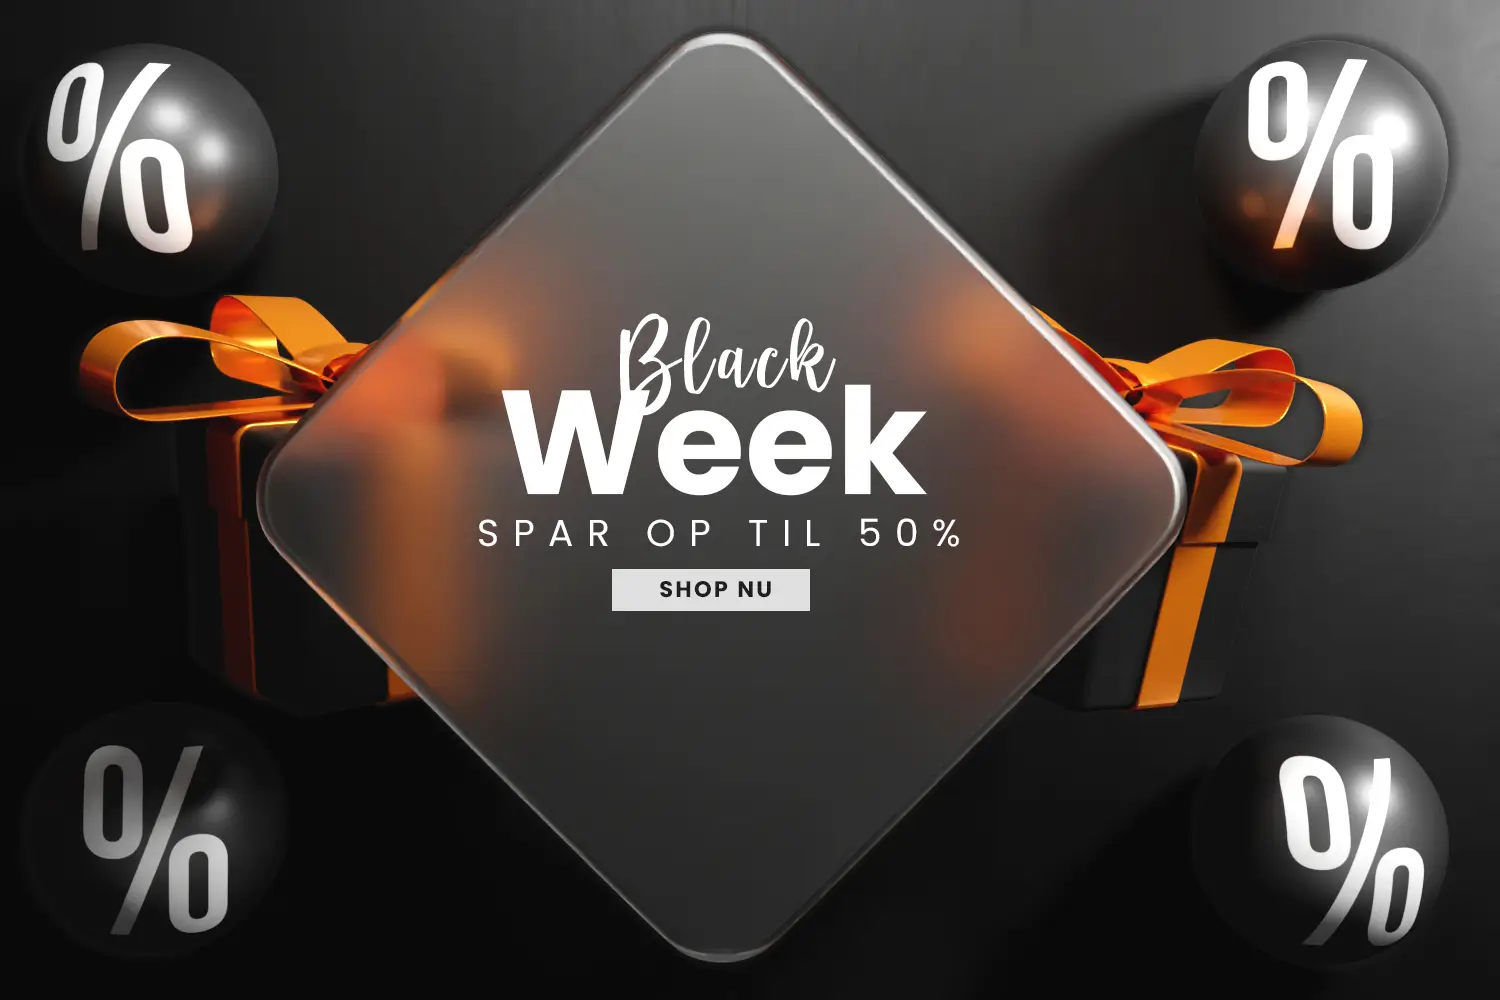 black week friday tilbud billigt køb online